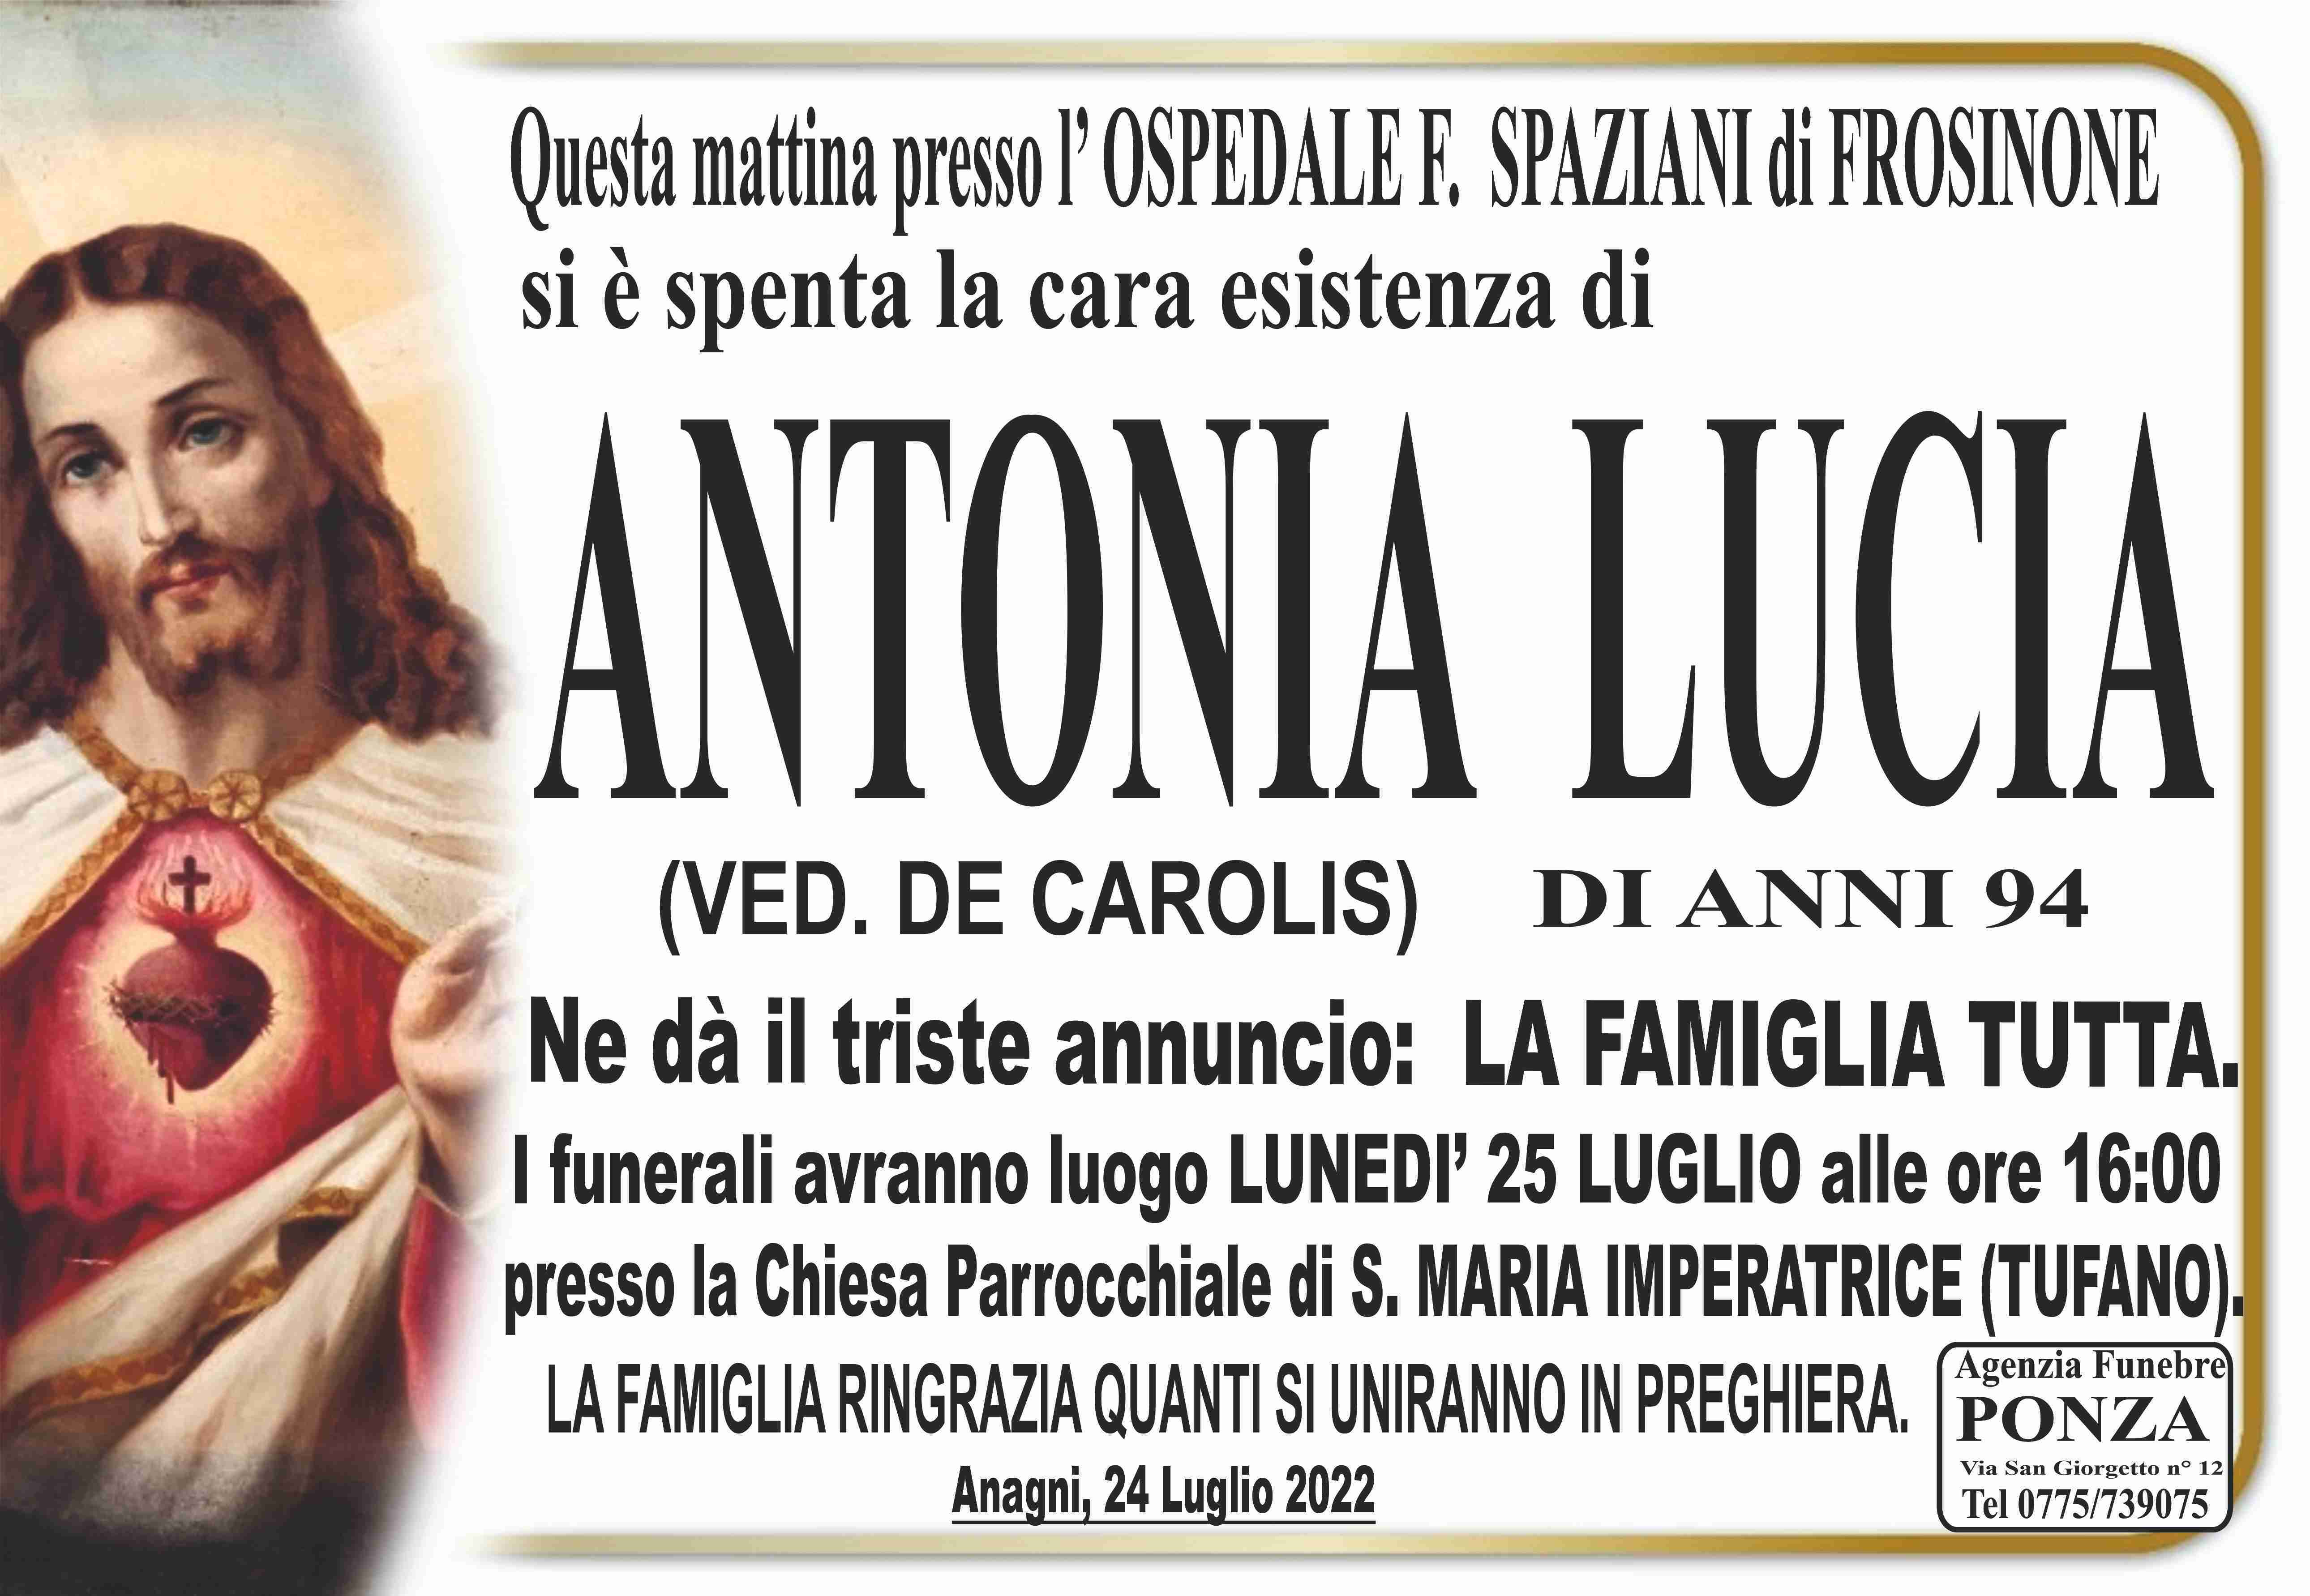 Antonia Lucia